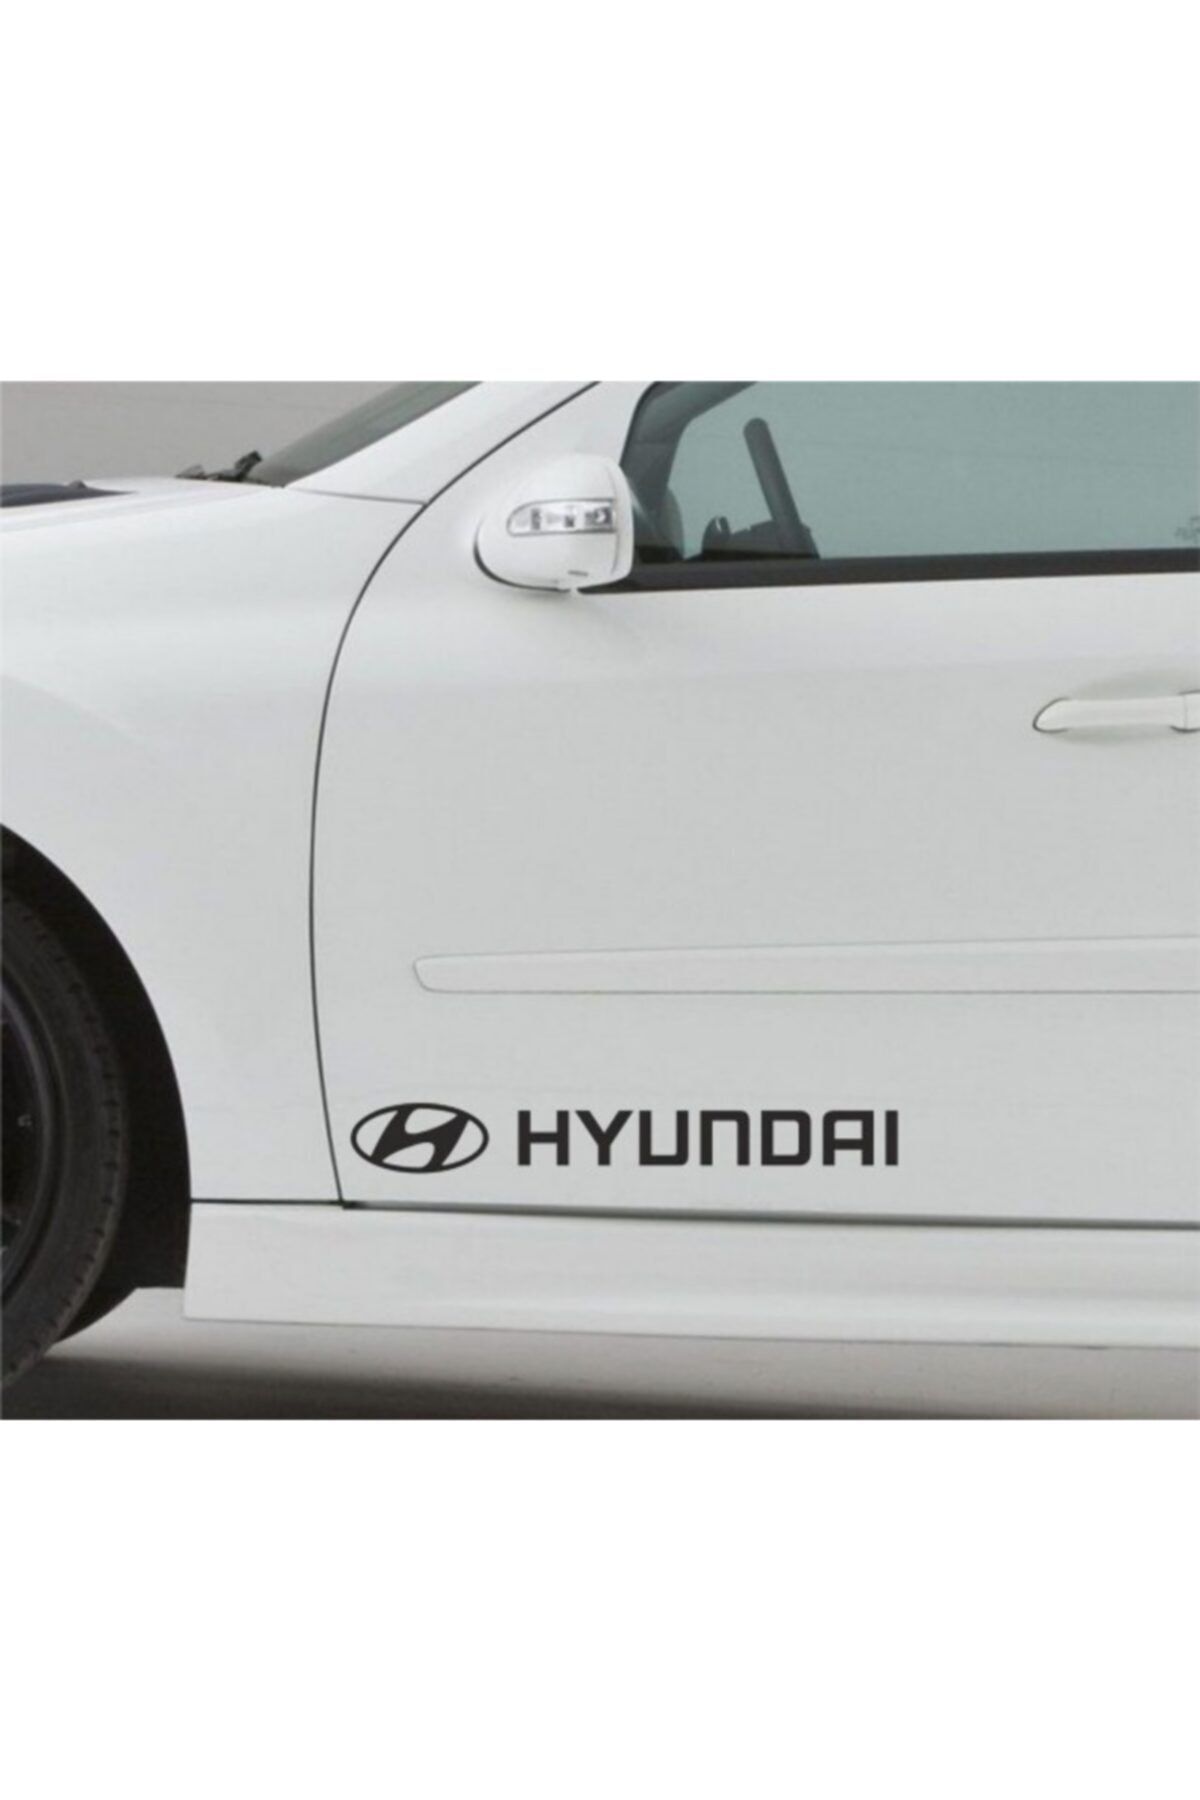 TSC Hyundai Araba Sticker Yapıştırma 2 ADET